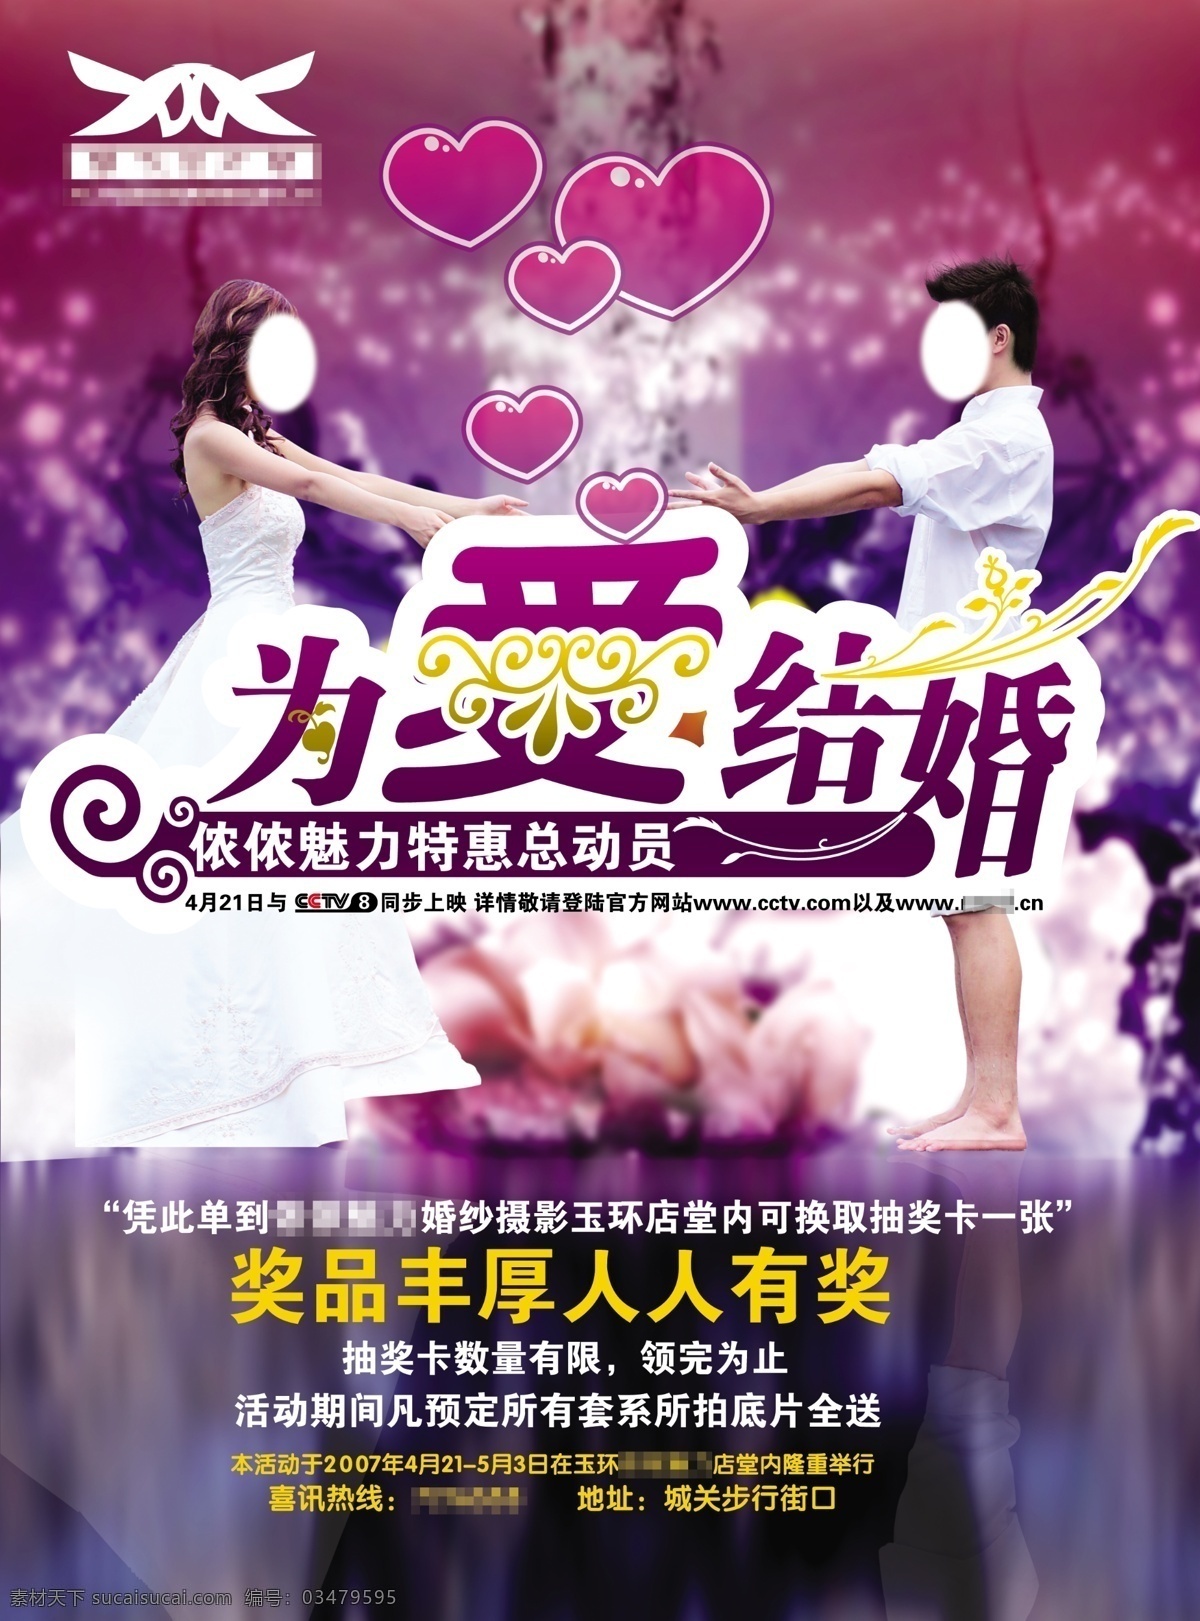 浪漫 紫色 婚庆 宣传单 新郎新娘 婚礼 婚纱 单页 dm宣传单 广告设计模板 源文件